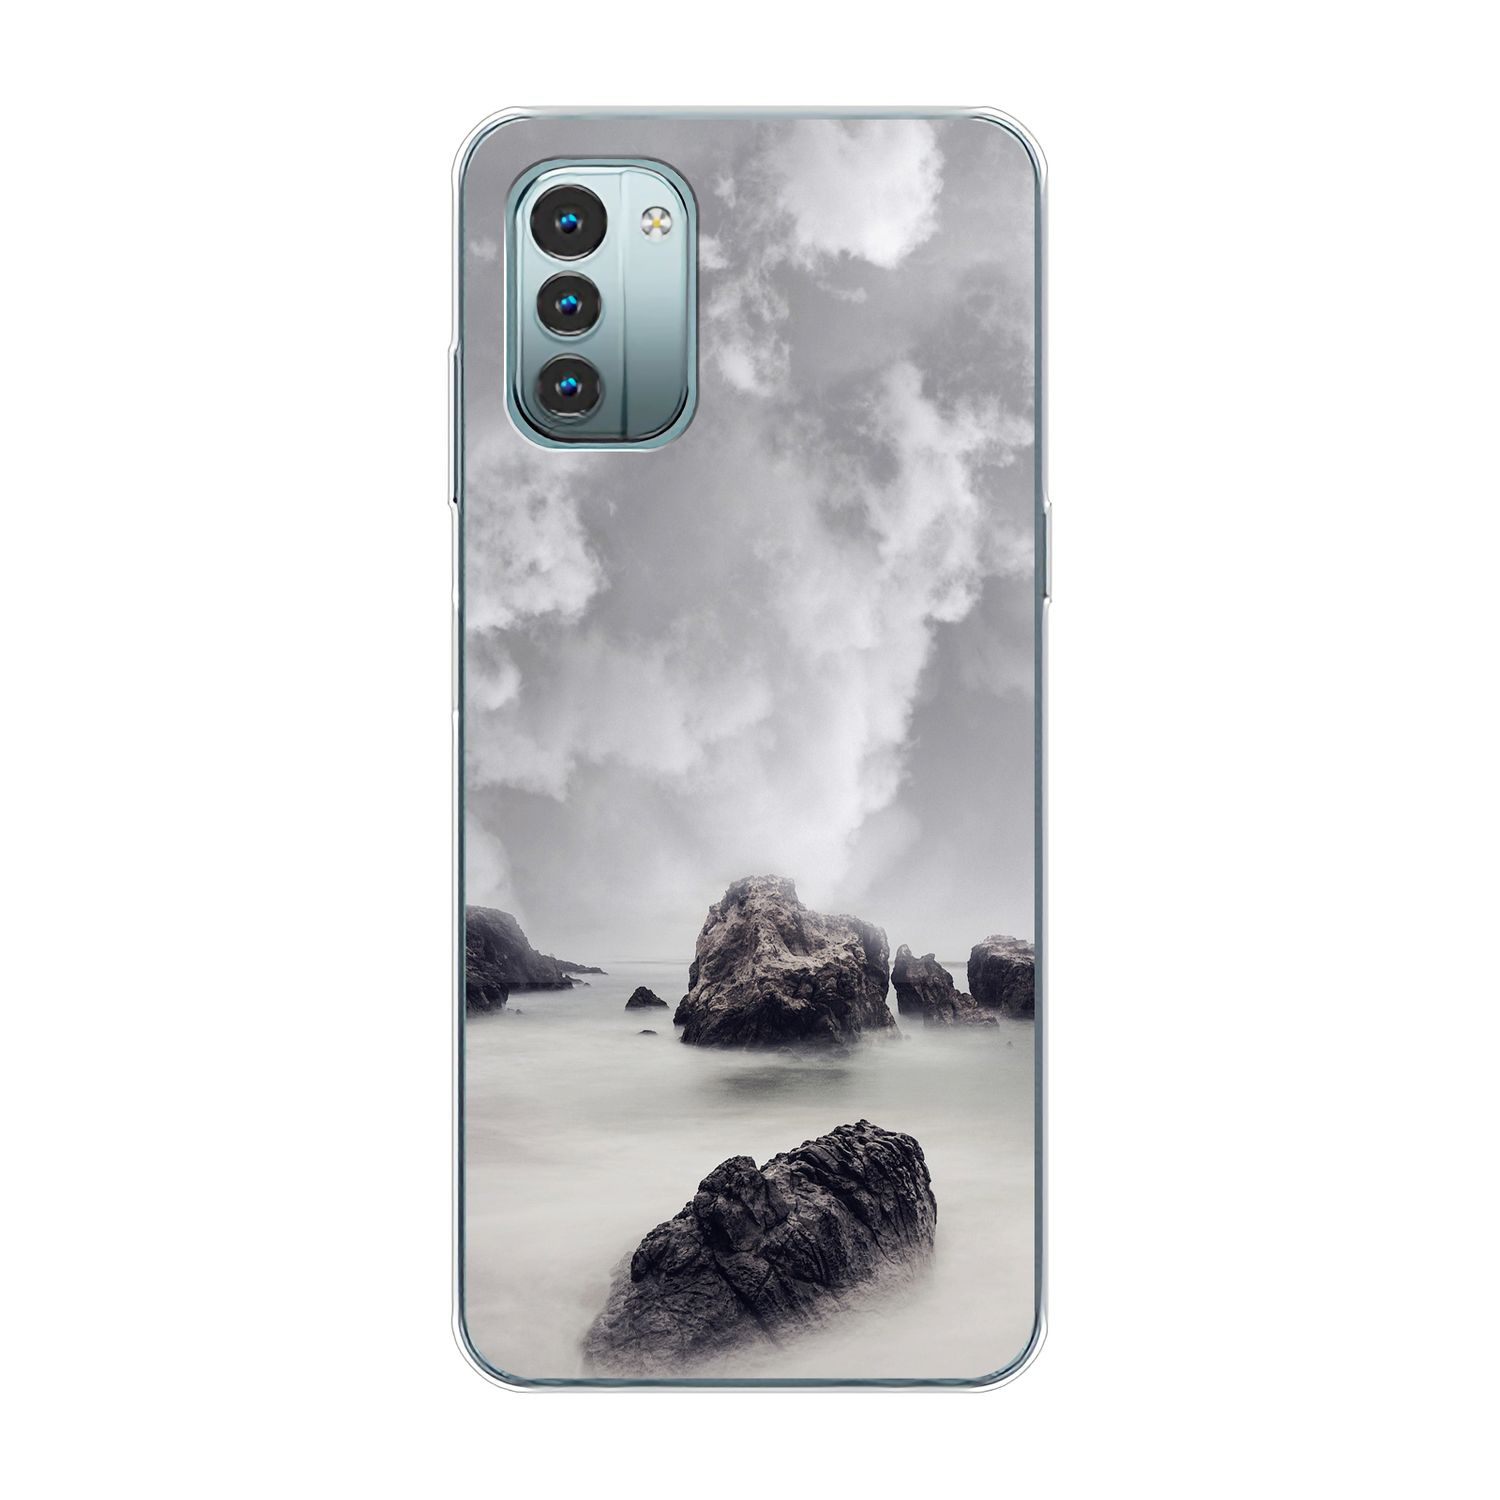 Case, G11, KÖNIG Nokia, DESIGN Backcover, Wolken Felsen